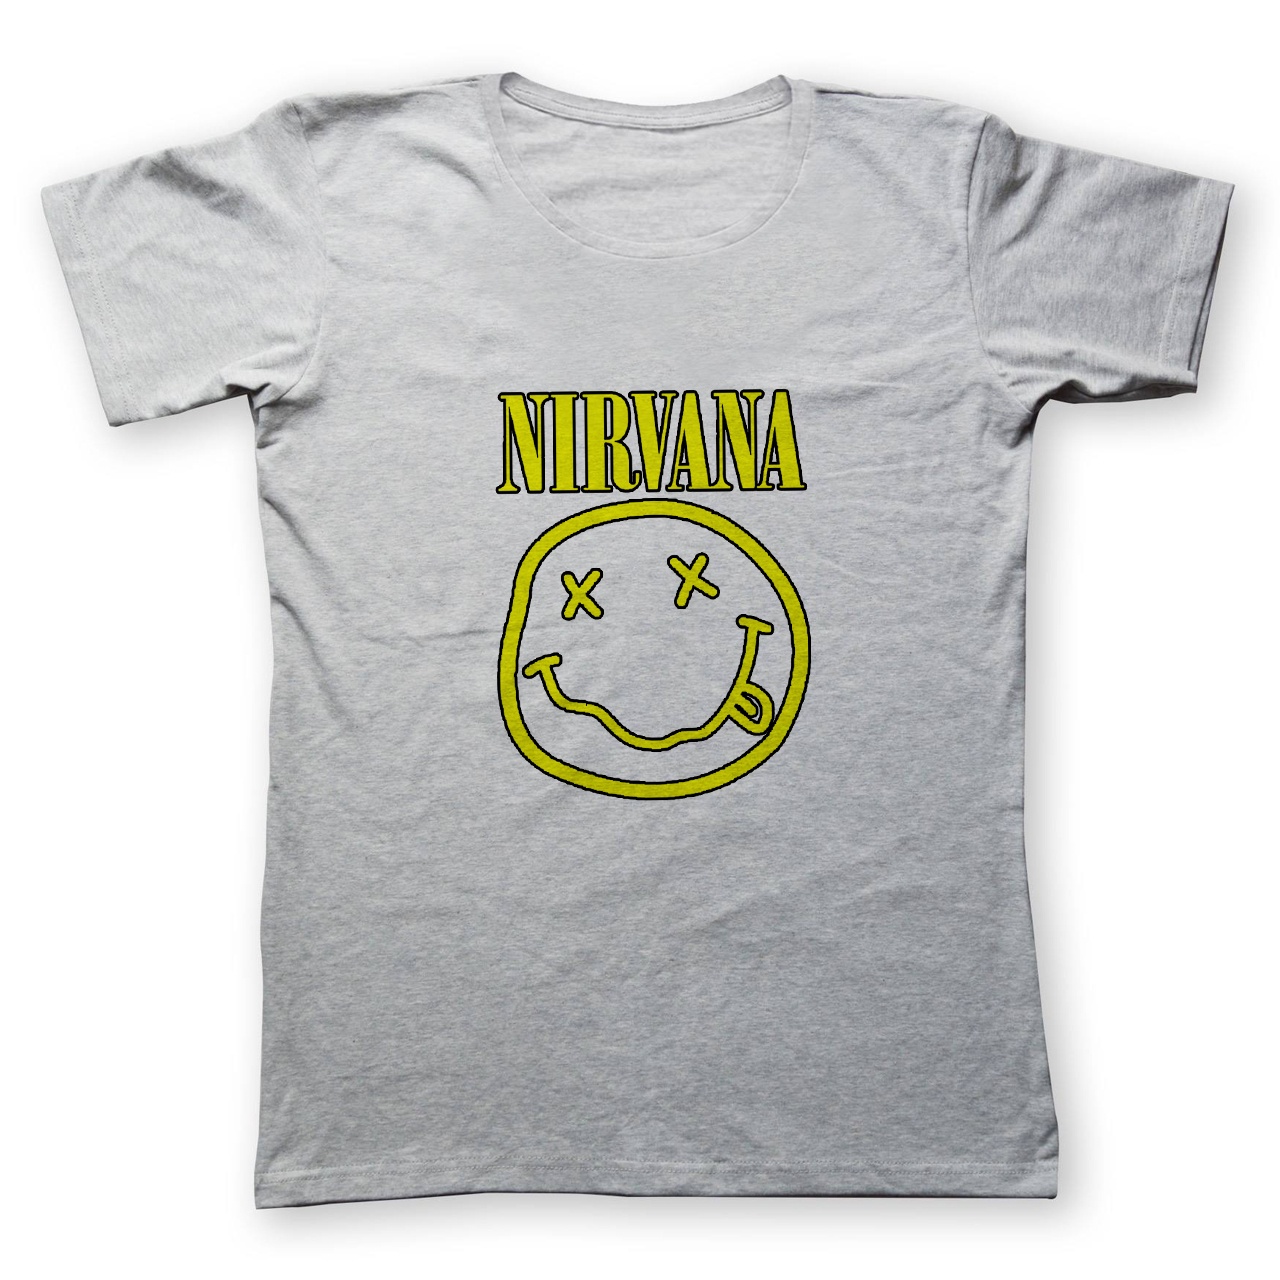 نقد و بررسی تی شرت مردانه به رسم طرح نیروانا کد 2242 توسط خریداران